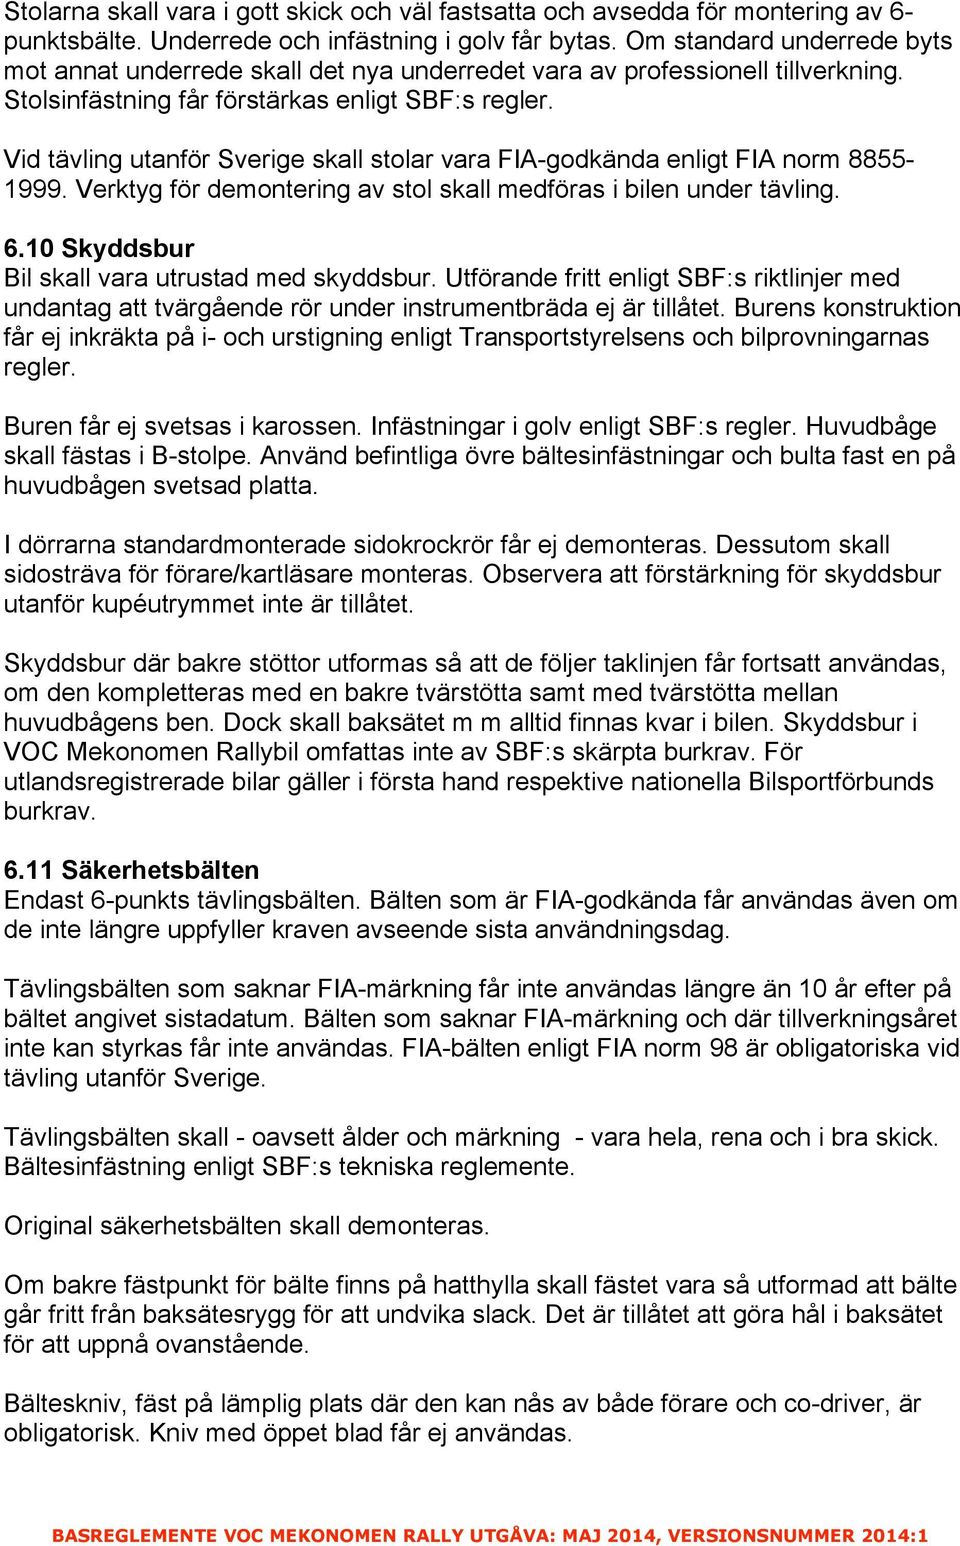 Vid tävling utanför Sverige skall stolar vara FIA-godkända enligt FIA norm 8855-1999. Verktyg för demontering av stol skall medföras i bilen under tävling. 6.